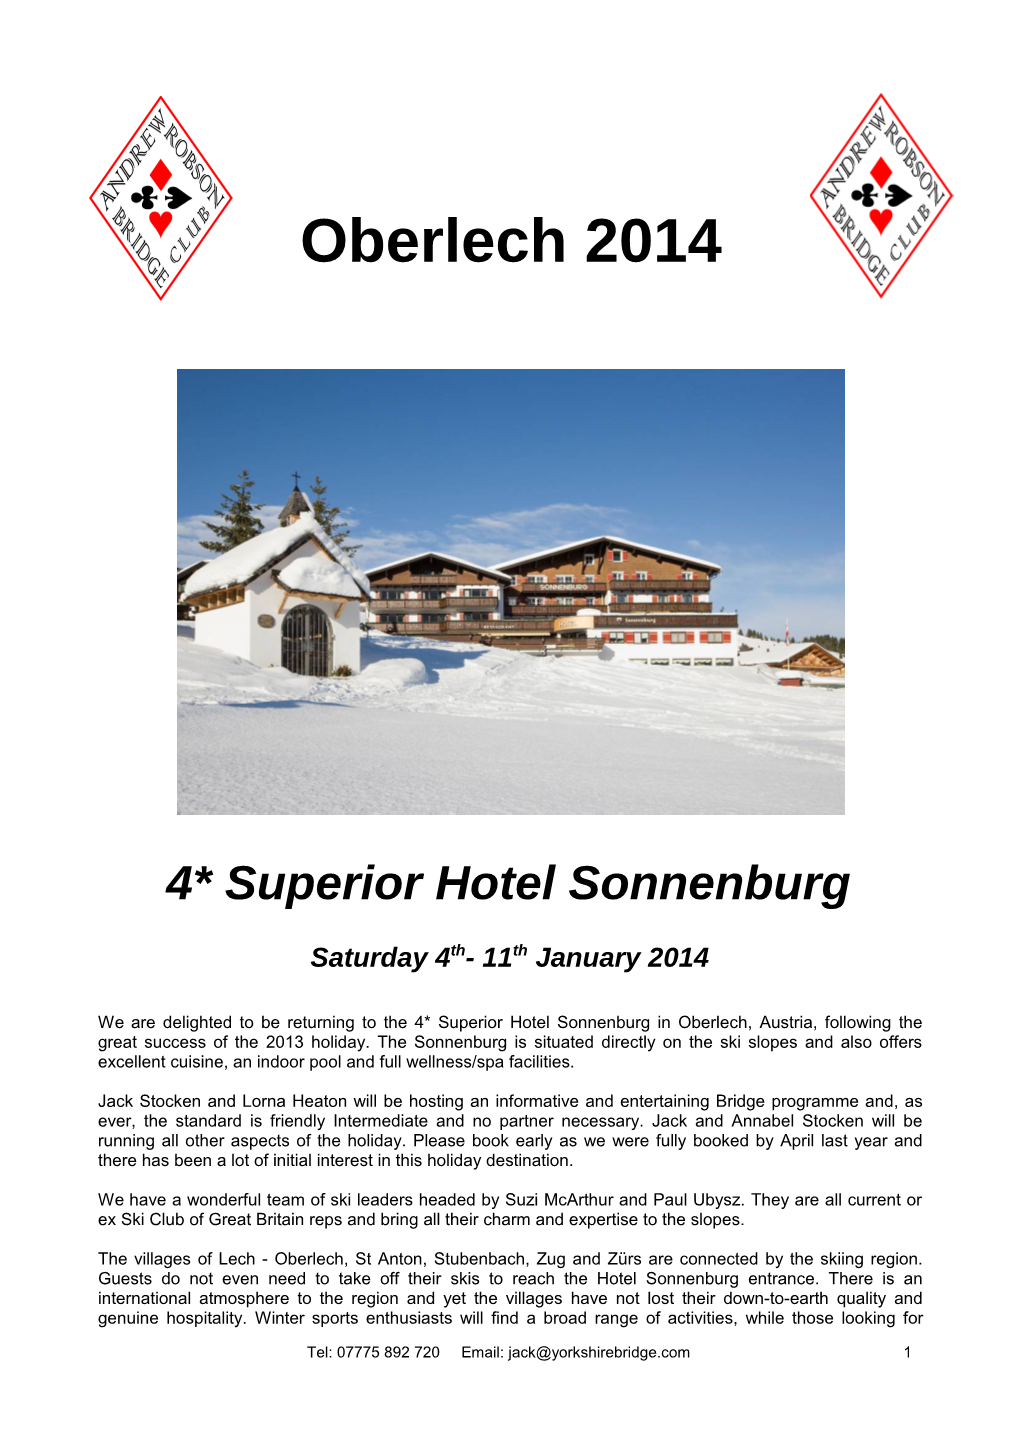 4* Superiorhotel Sonnenburg